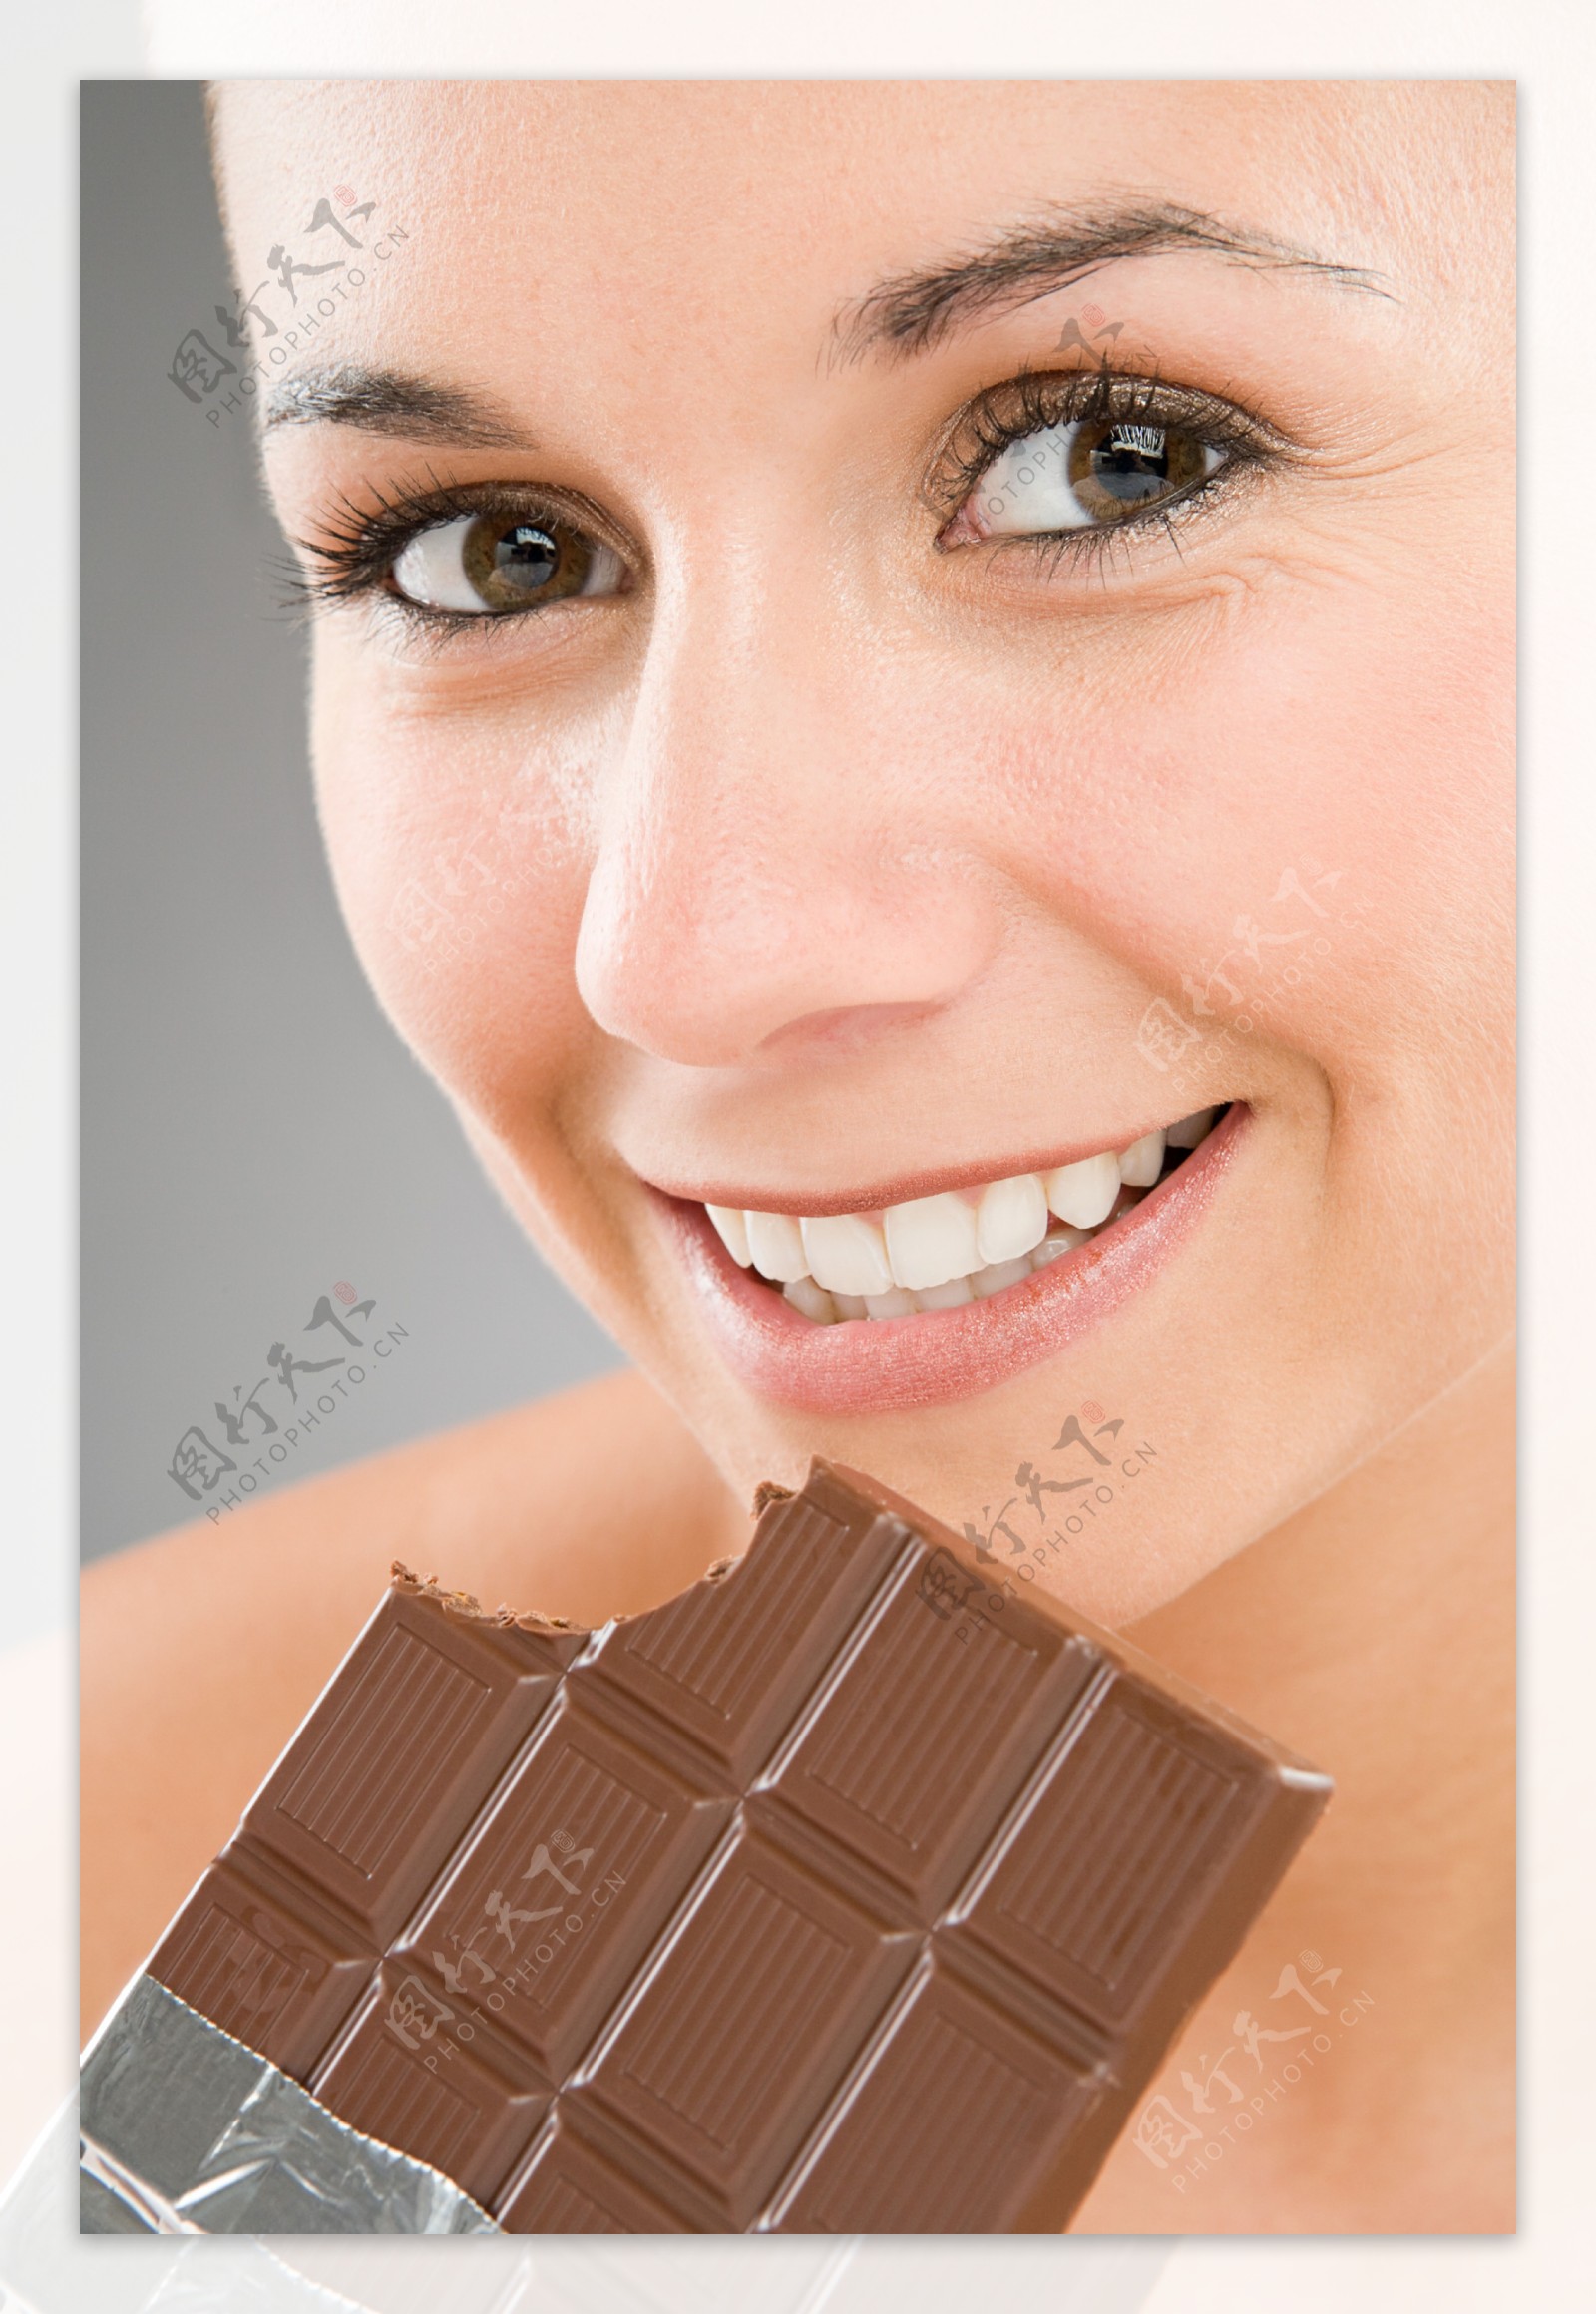 吃巧克力的女人图片